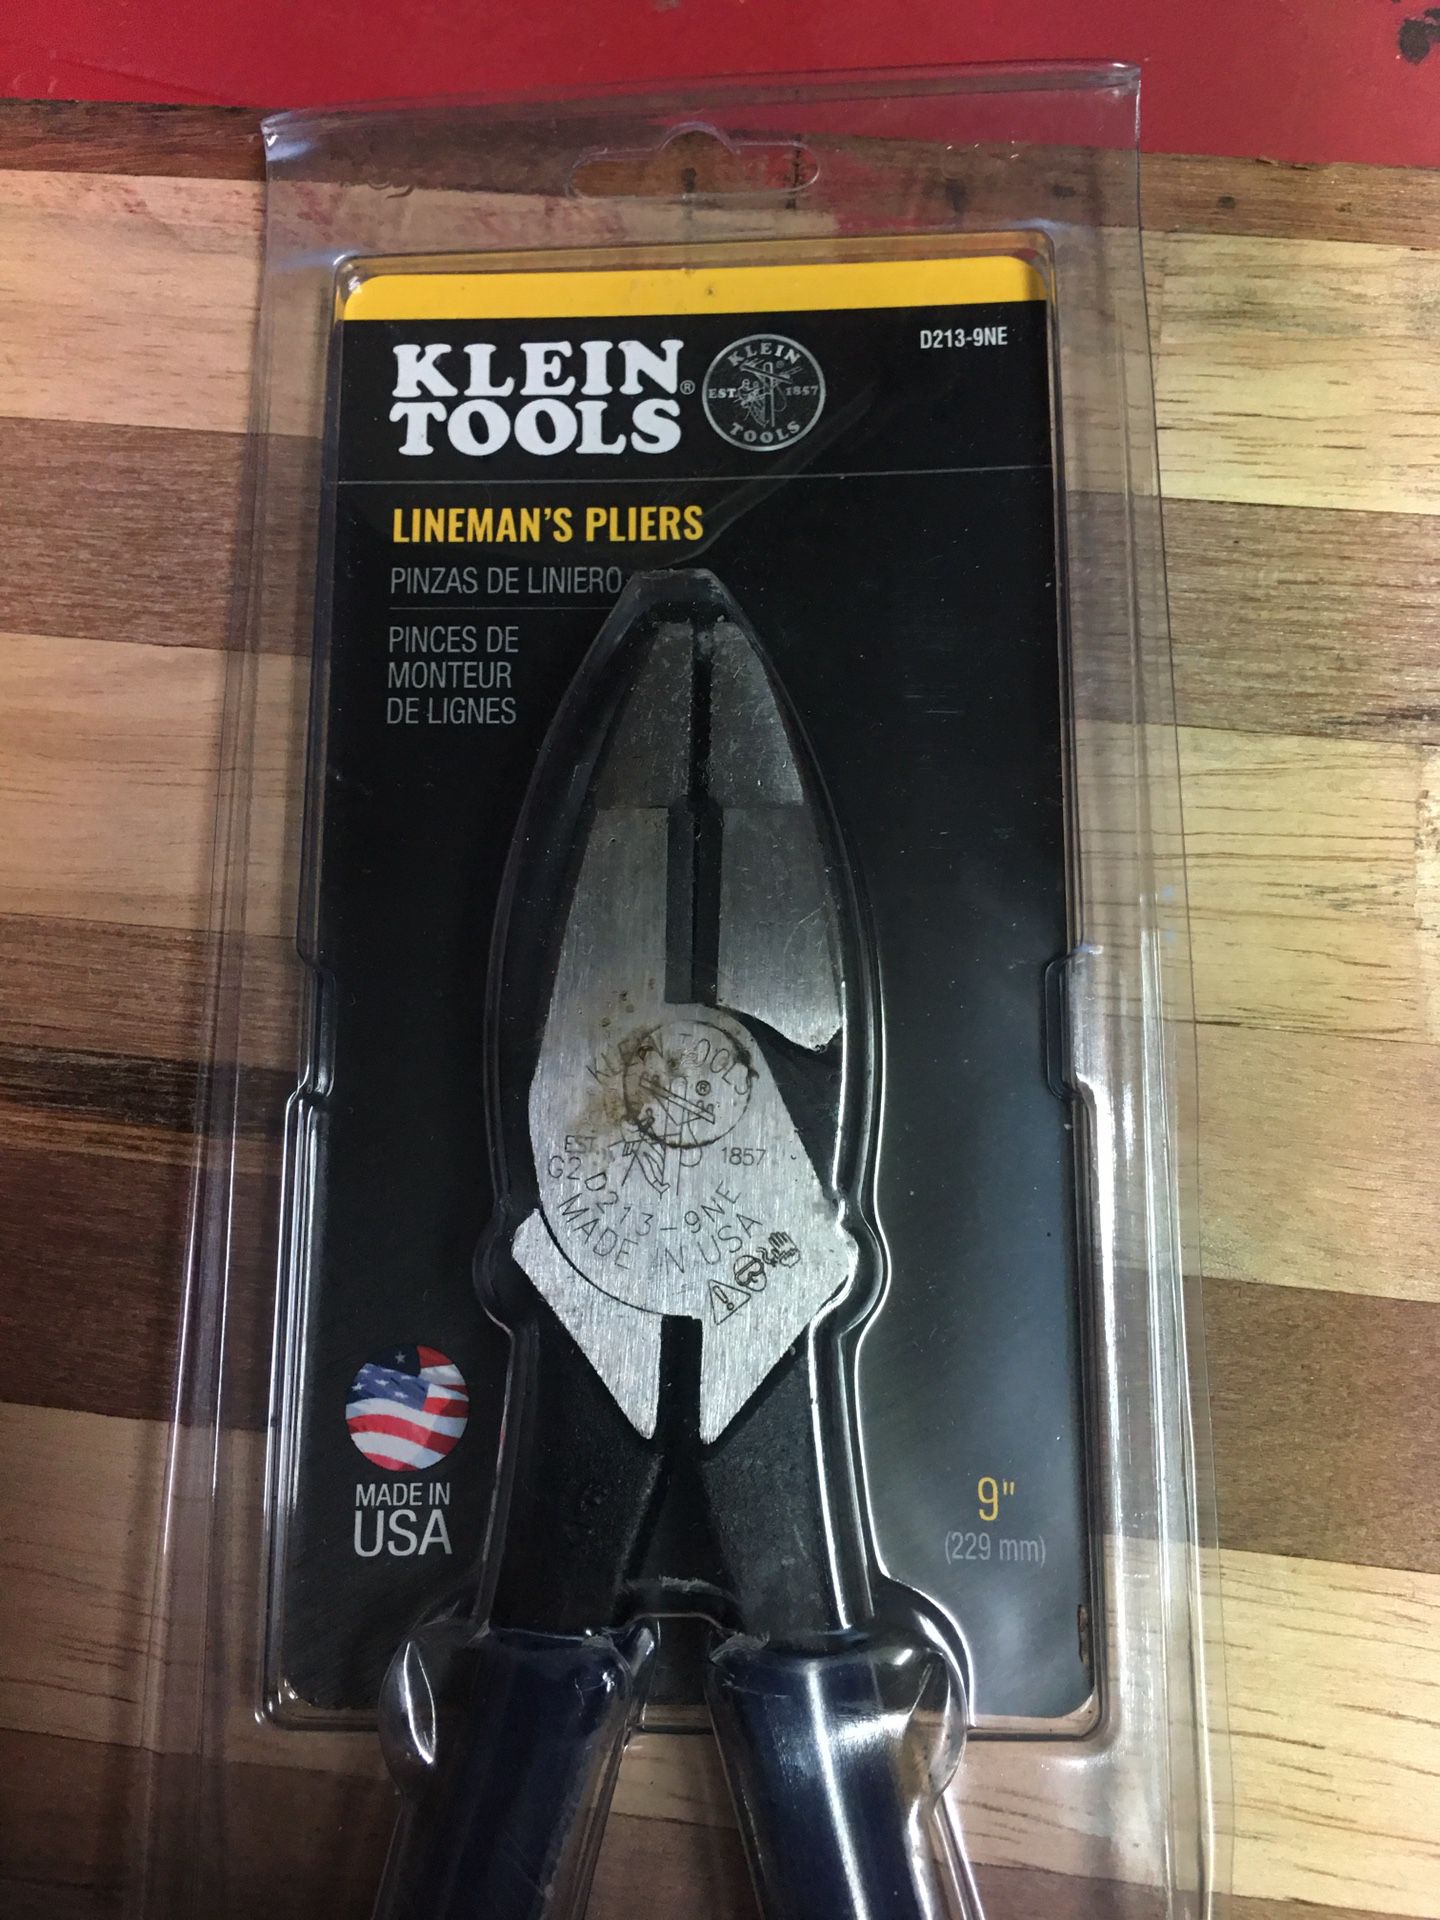 Klein lineman’s pliers